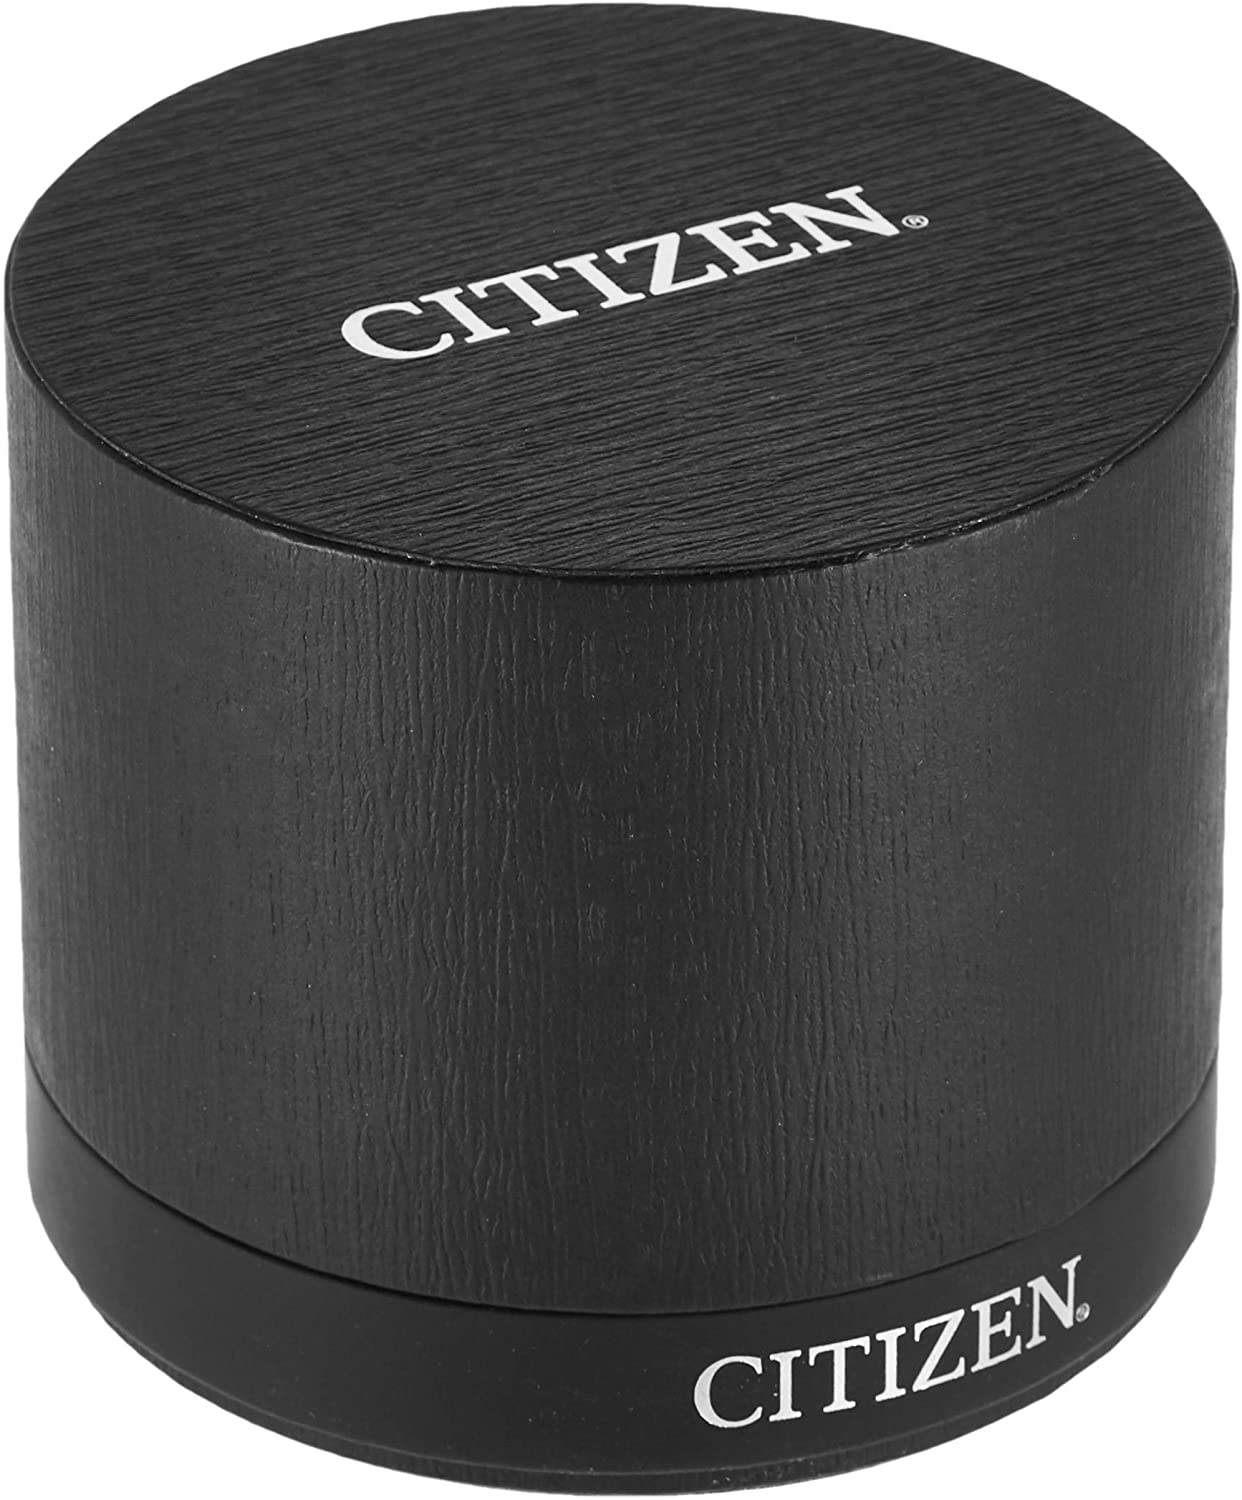 Citizen Men's Eco-Drive Watch AU1065-58E